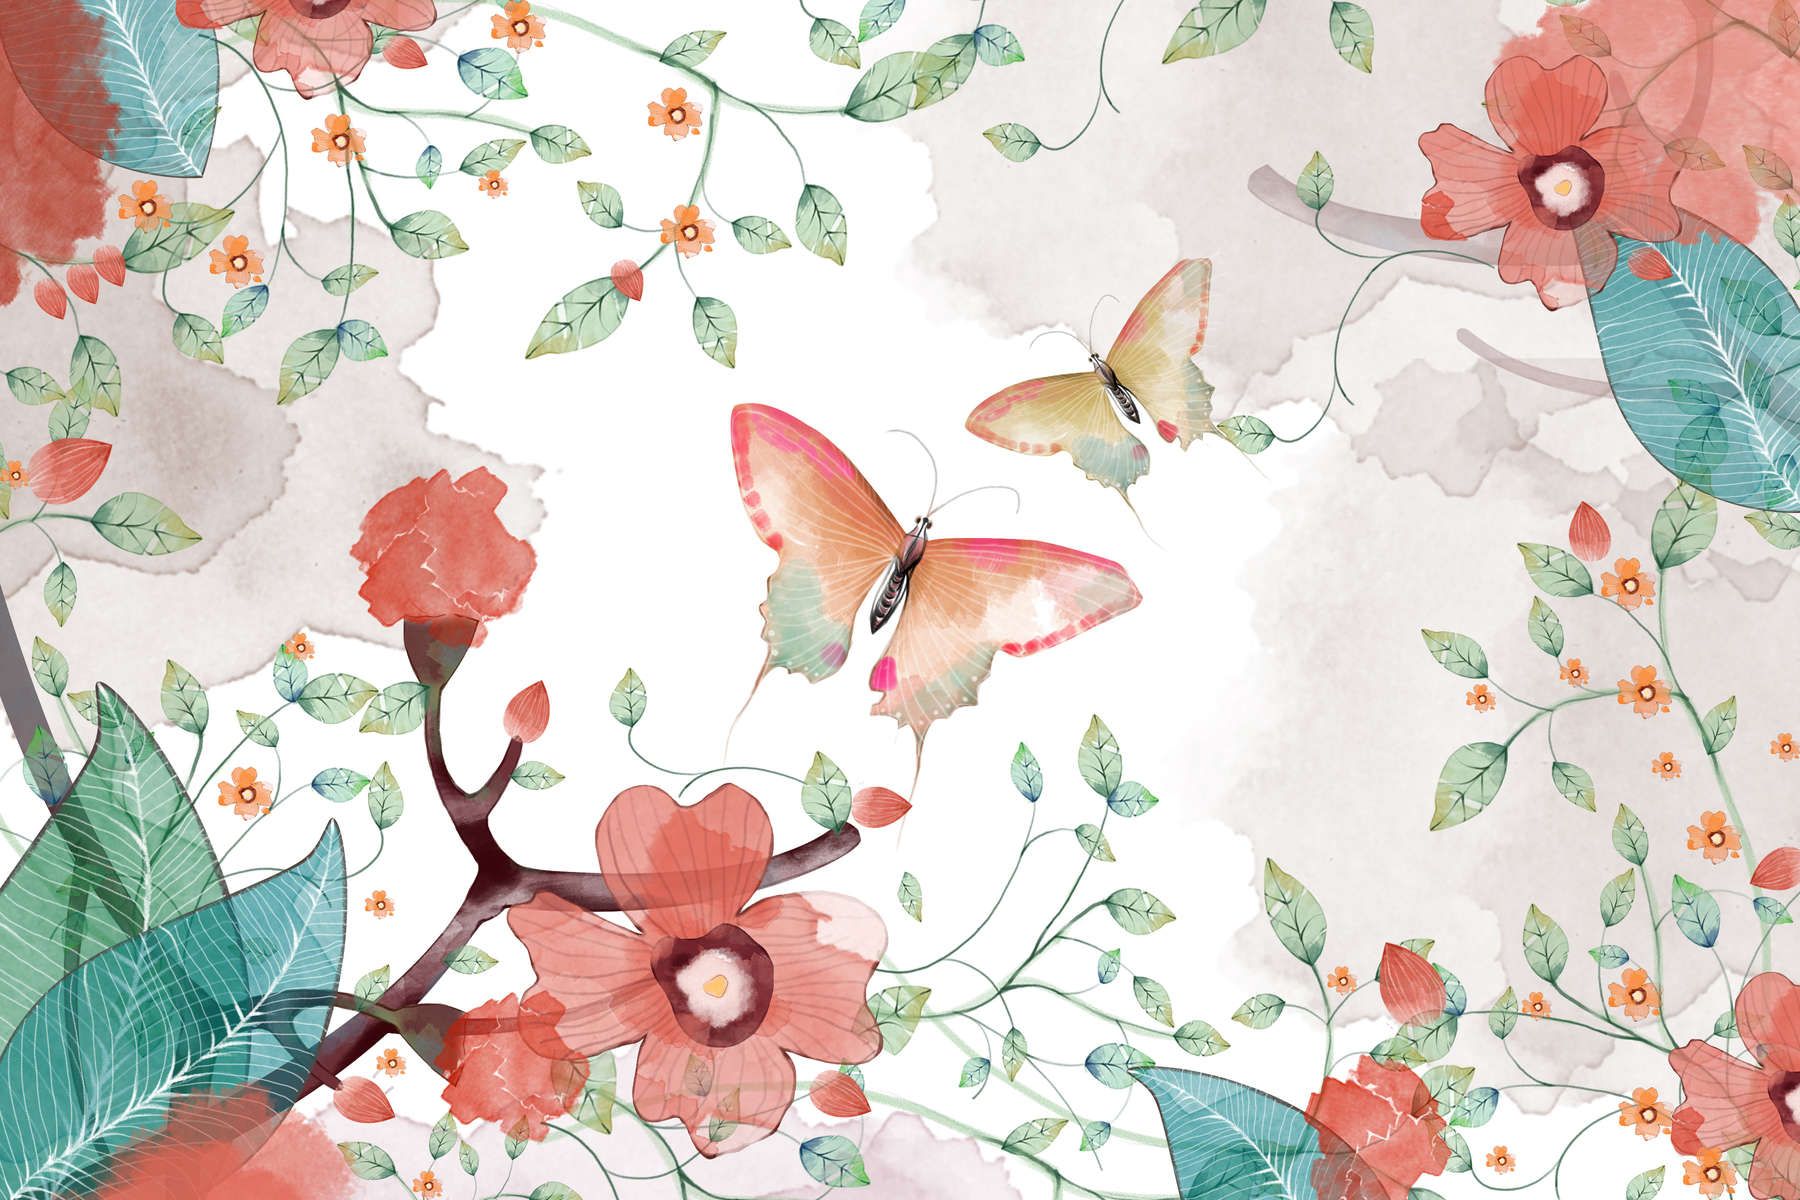             Fototapete floral mit Blättern und Schmetterlingen – Glattes & perlmutt-schimmerndes Vlies
        